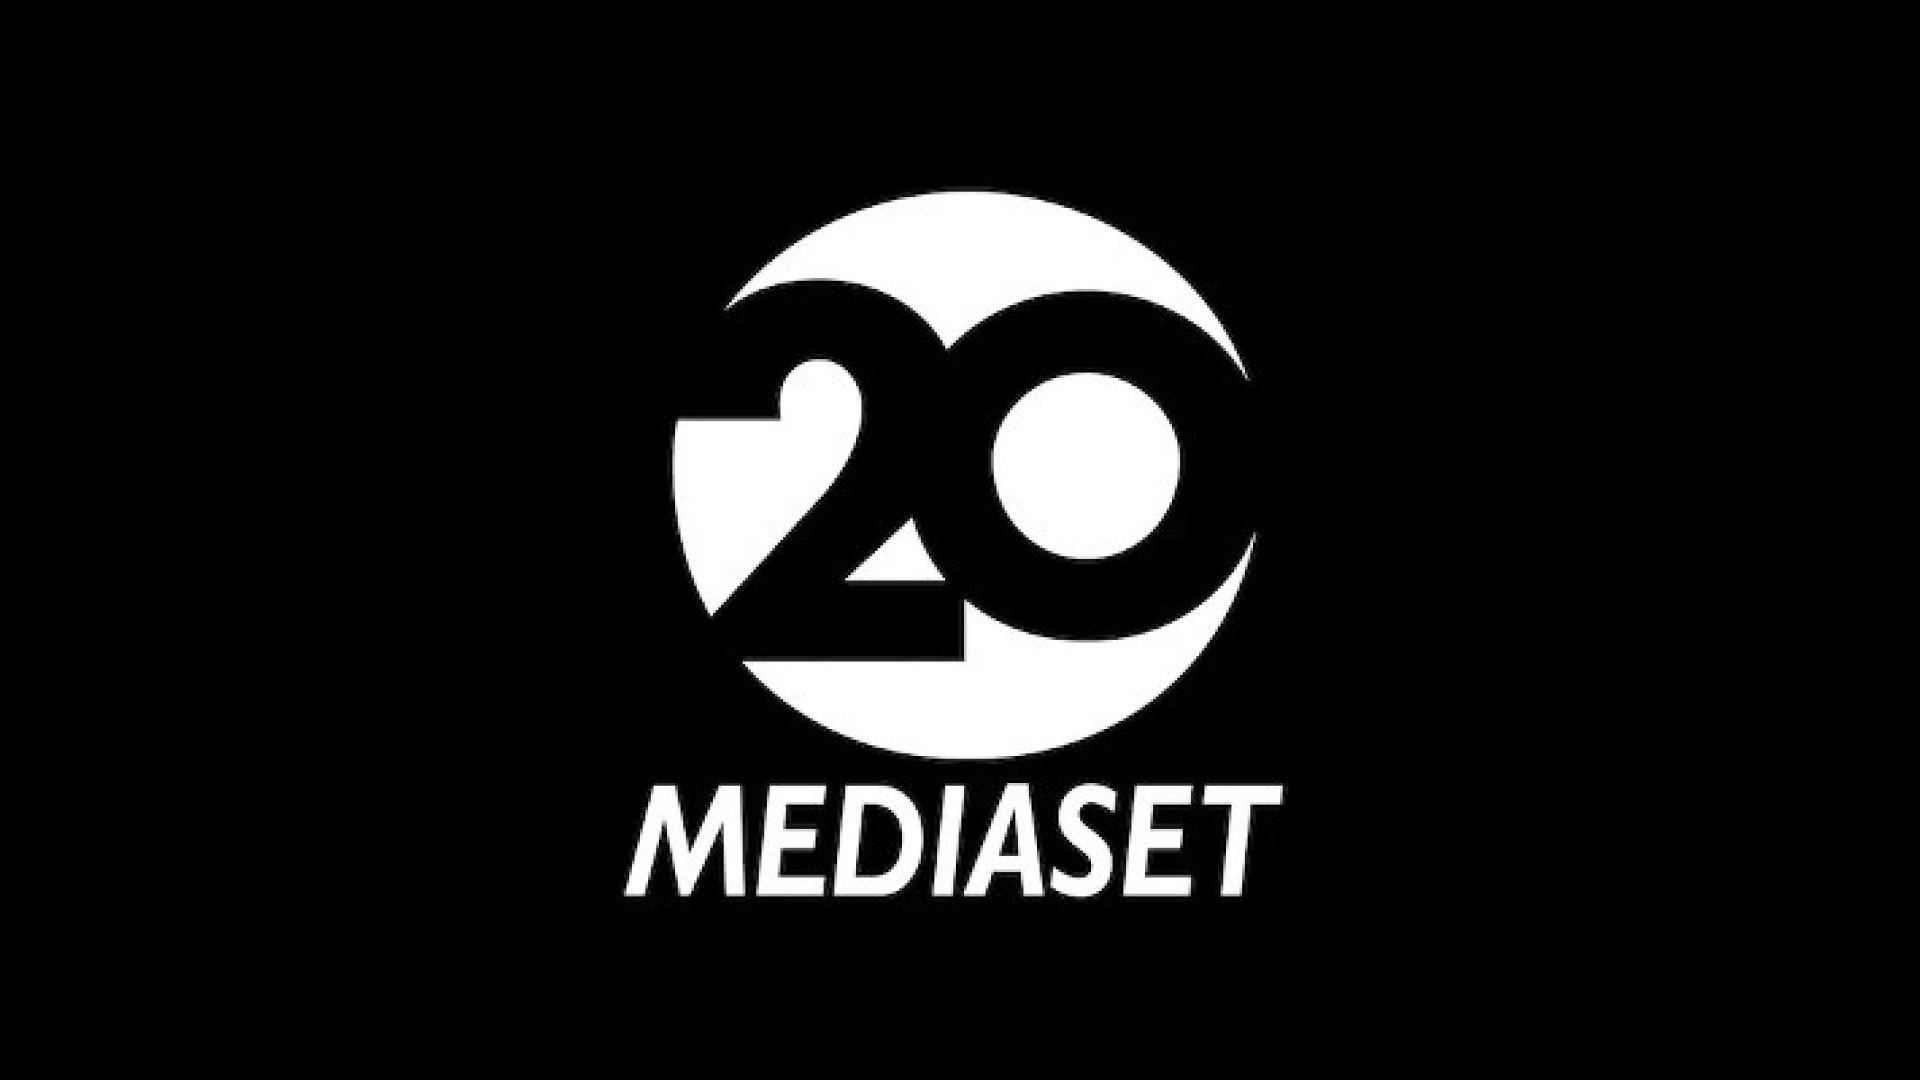 Mediaset 20 HD streaming TV Live